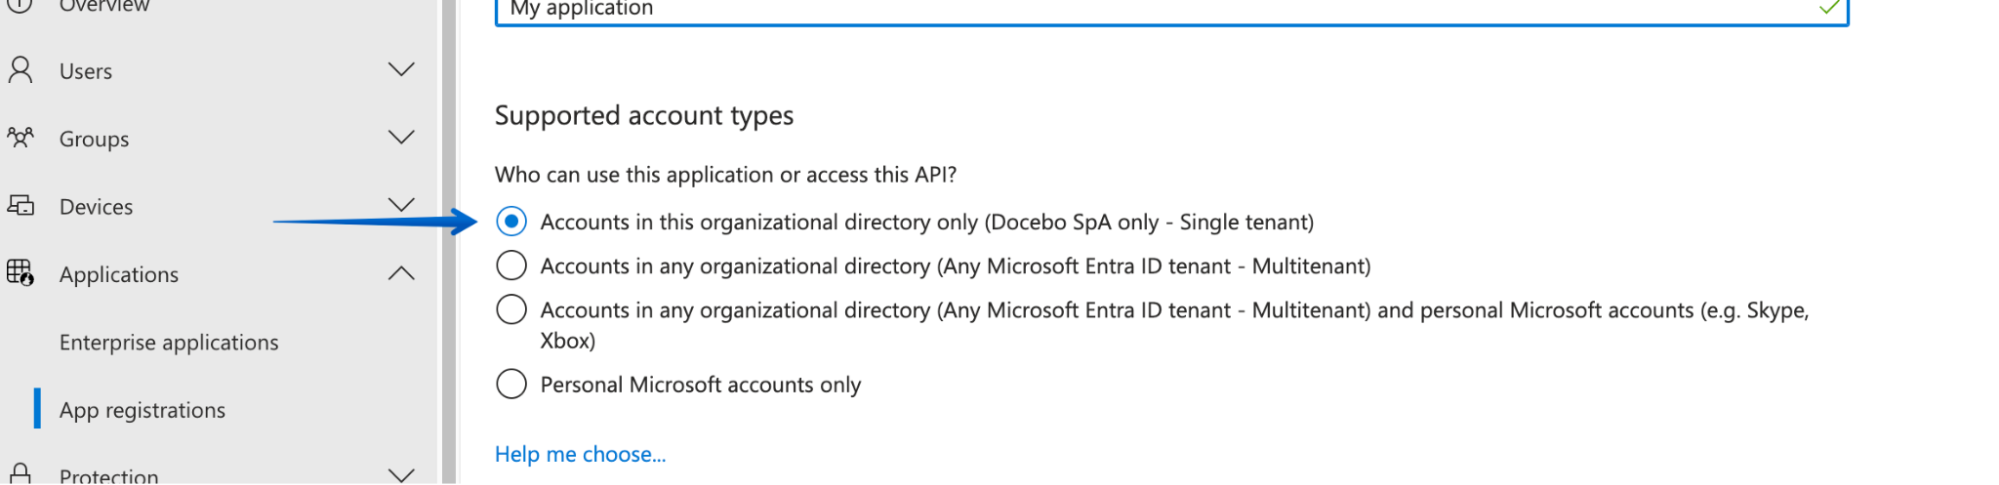 Selezionare Account nella directory organizzativa solo per i tipi di account supportati in Microsoft Teams.